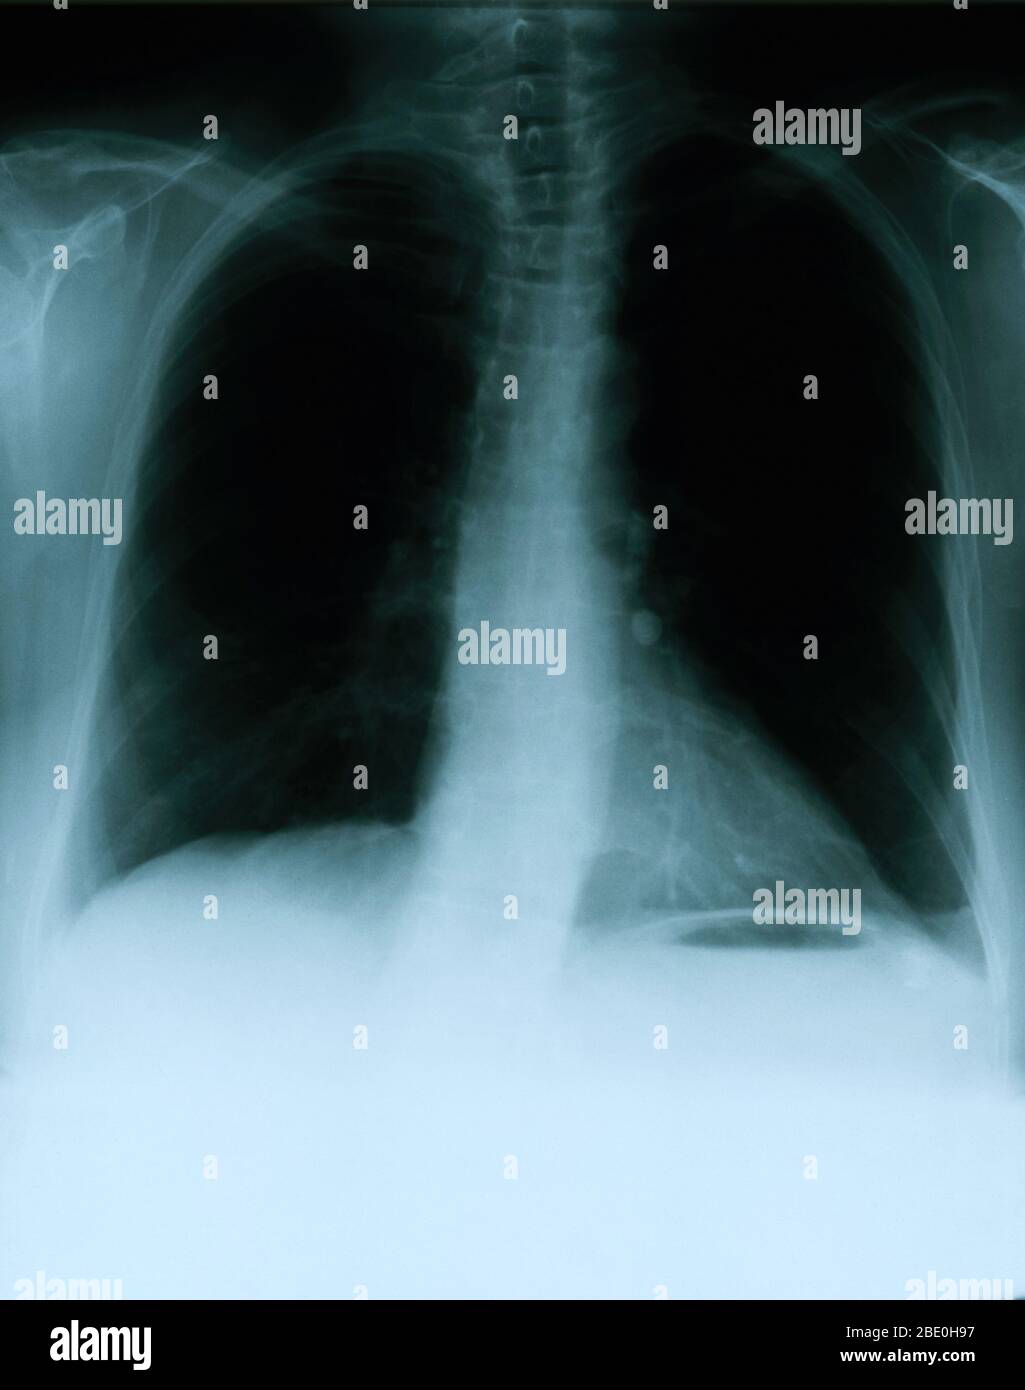 Röntgenaufnahme mit einer Frontansicht der Brust eines 54-jährigen Weibchens. Die Röntgenaufnahme zeigt einen verkalkten linken Hilar-Lymphknoten, der höchstwahrscheinlich aus einer früheren granulomatösen Erkrankung resultiert. Auffällig ist auch ein vage Bereich mit erhöhter Dichte innerhalb des lateralen Aspekts der rechten Spitze und eine leichte skoliotische Deformation der Rückenwirbelsäule. Stockfoto